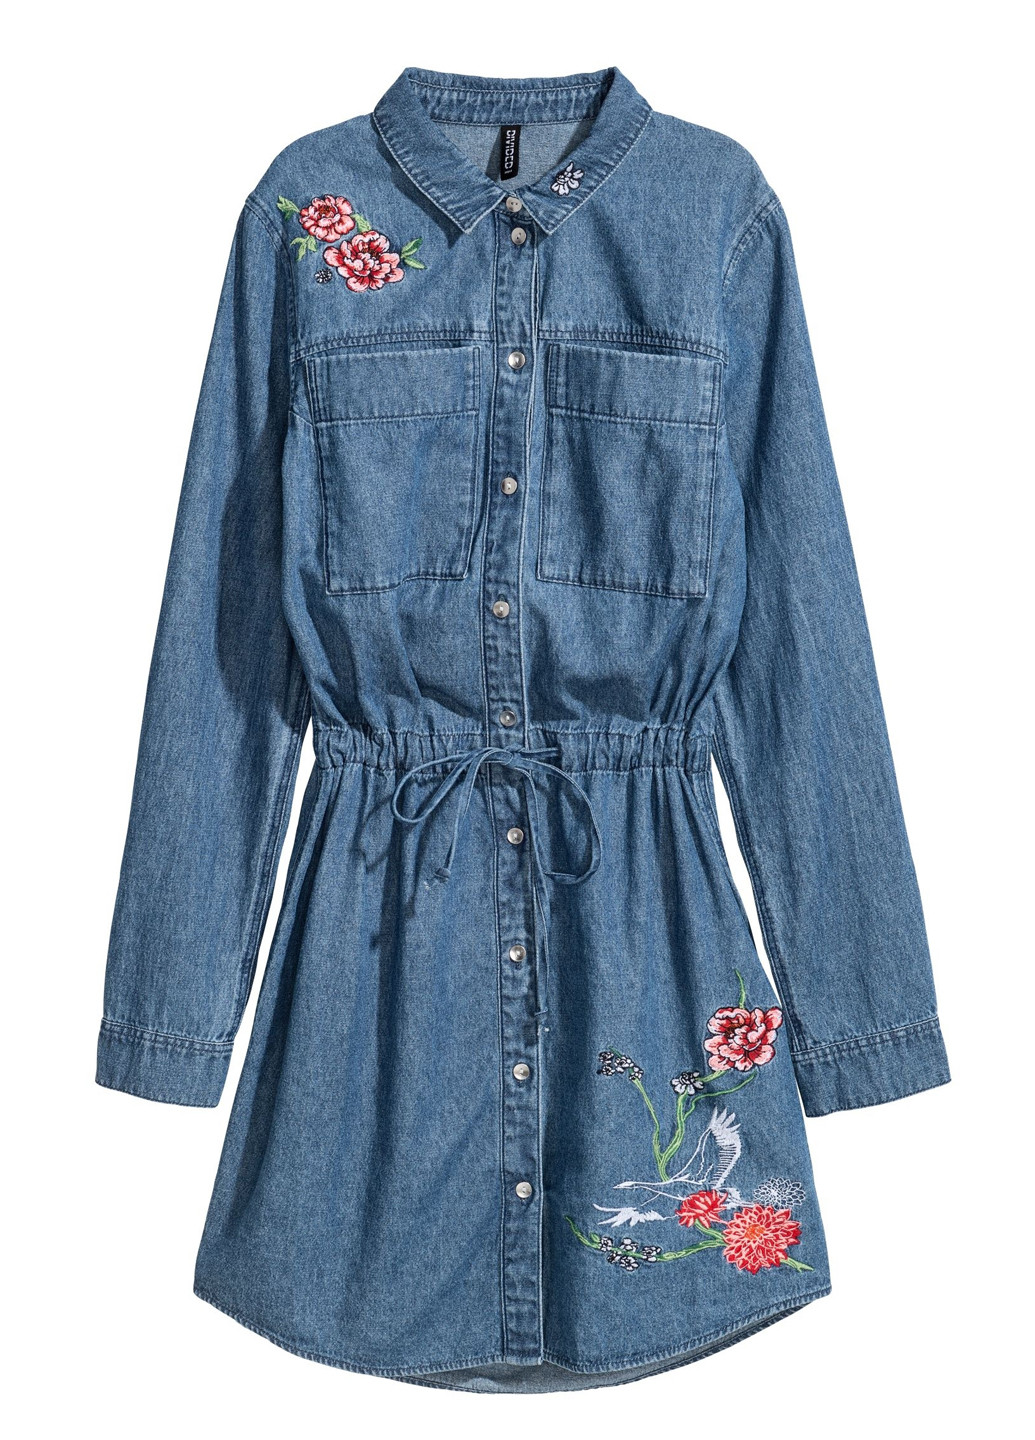 Синее джинсовое платье рубашка H&M с цветочным принтом